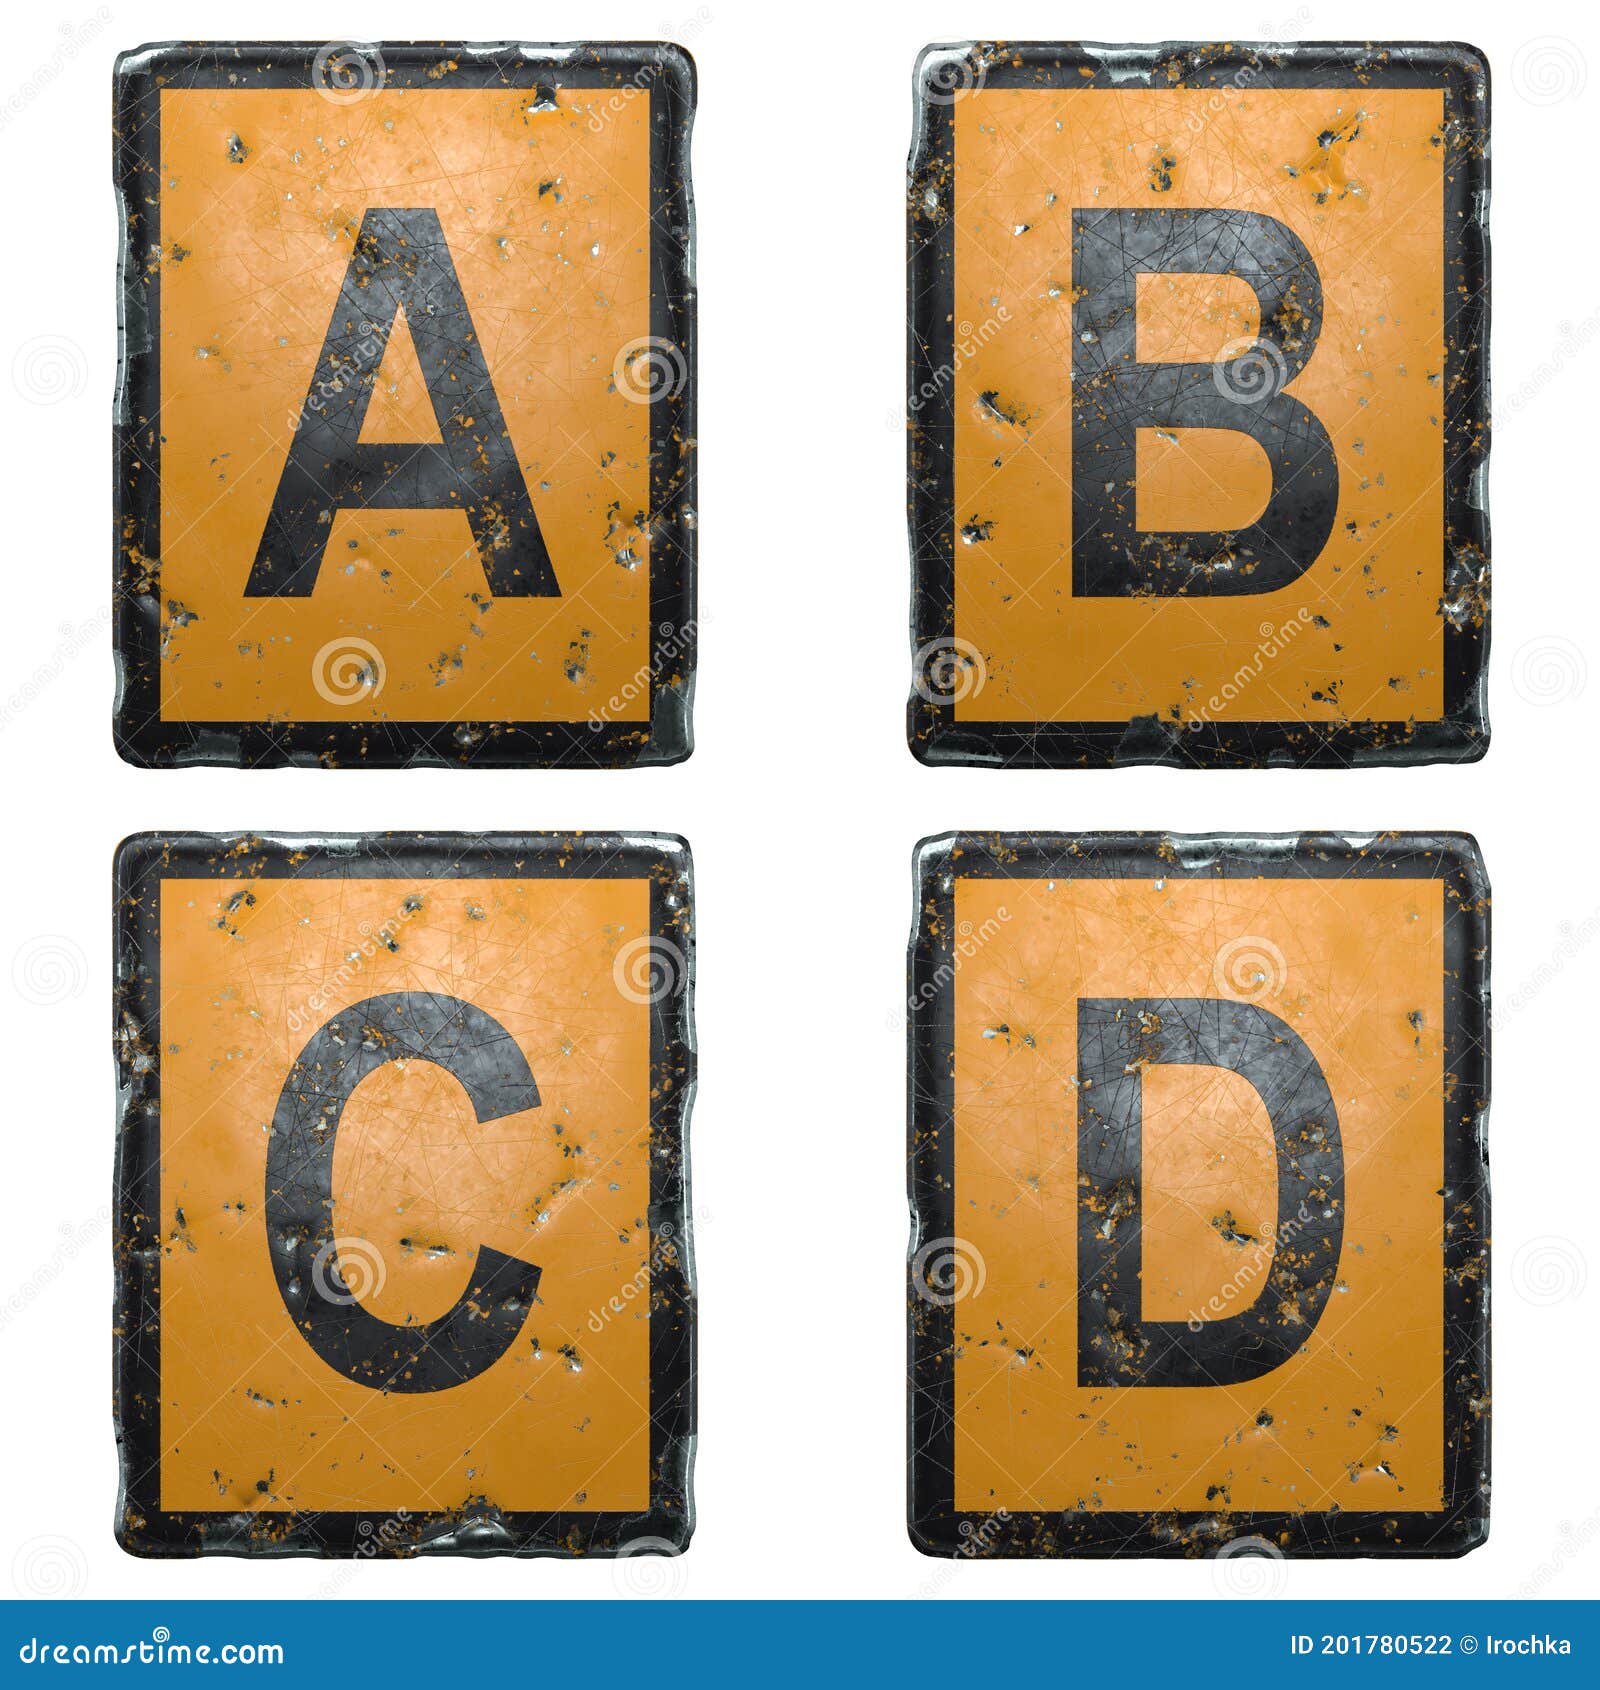 Bộ chữ viết hoa A, B, C, D được tạo ra từ biển đường công cộng màu cam nổi bật, sẽ khiến bạn cảm thấy bắt mắt và đầy năng lượng. Hãy xem ảnh để cảm nhận những đường nét hoàn hảo của chữ viết này.